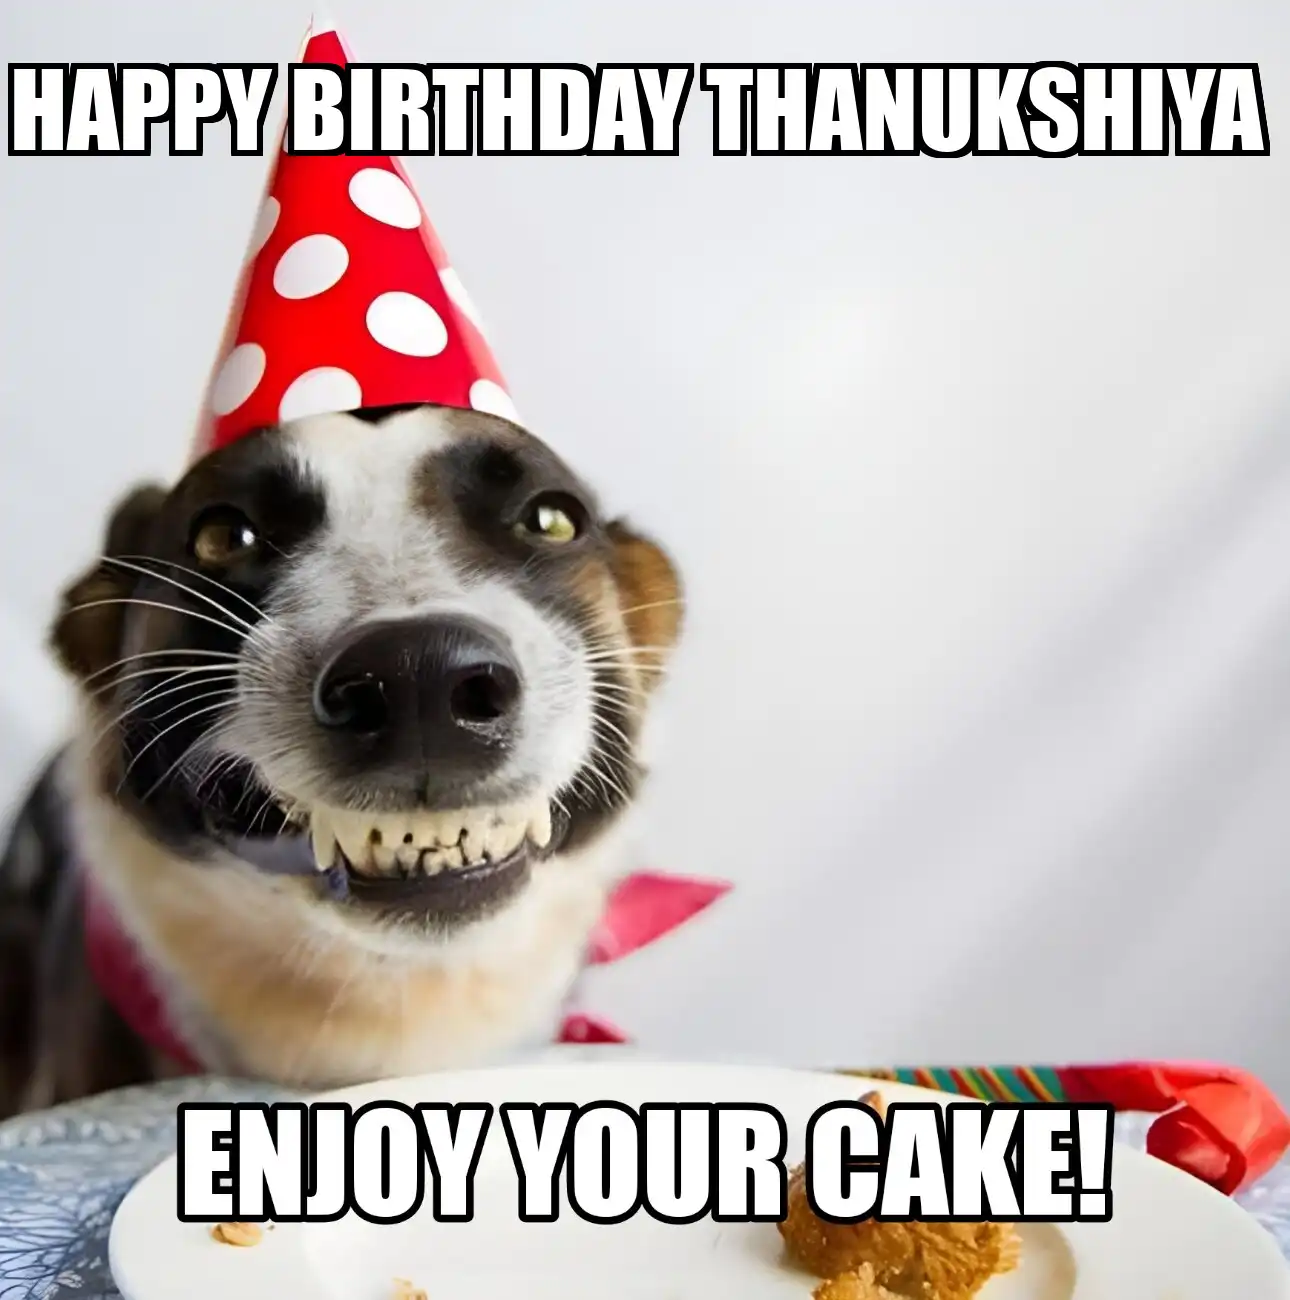 Happy Birthday Thanukshiya Enjoy Your Cake Dog Meme